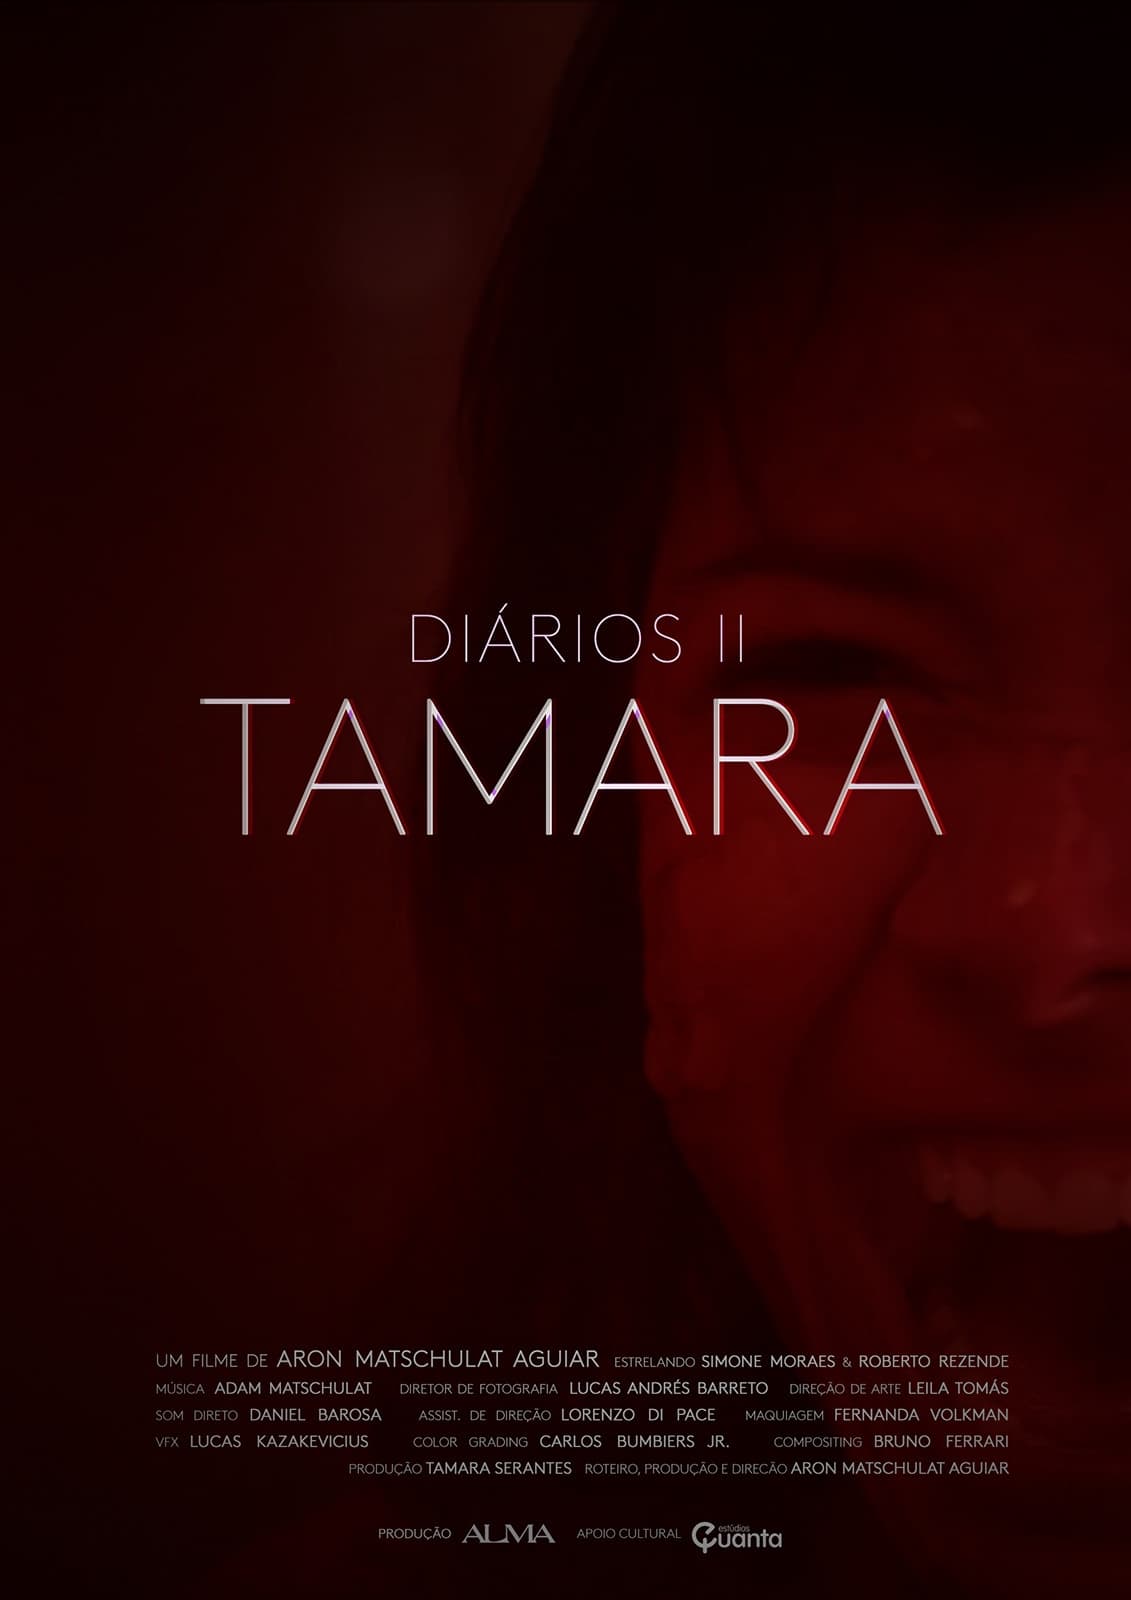 Diaries II - Tamara